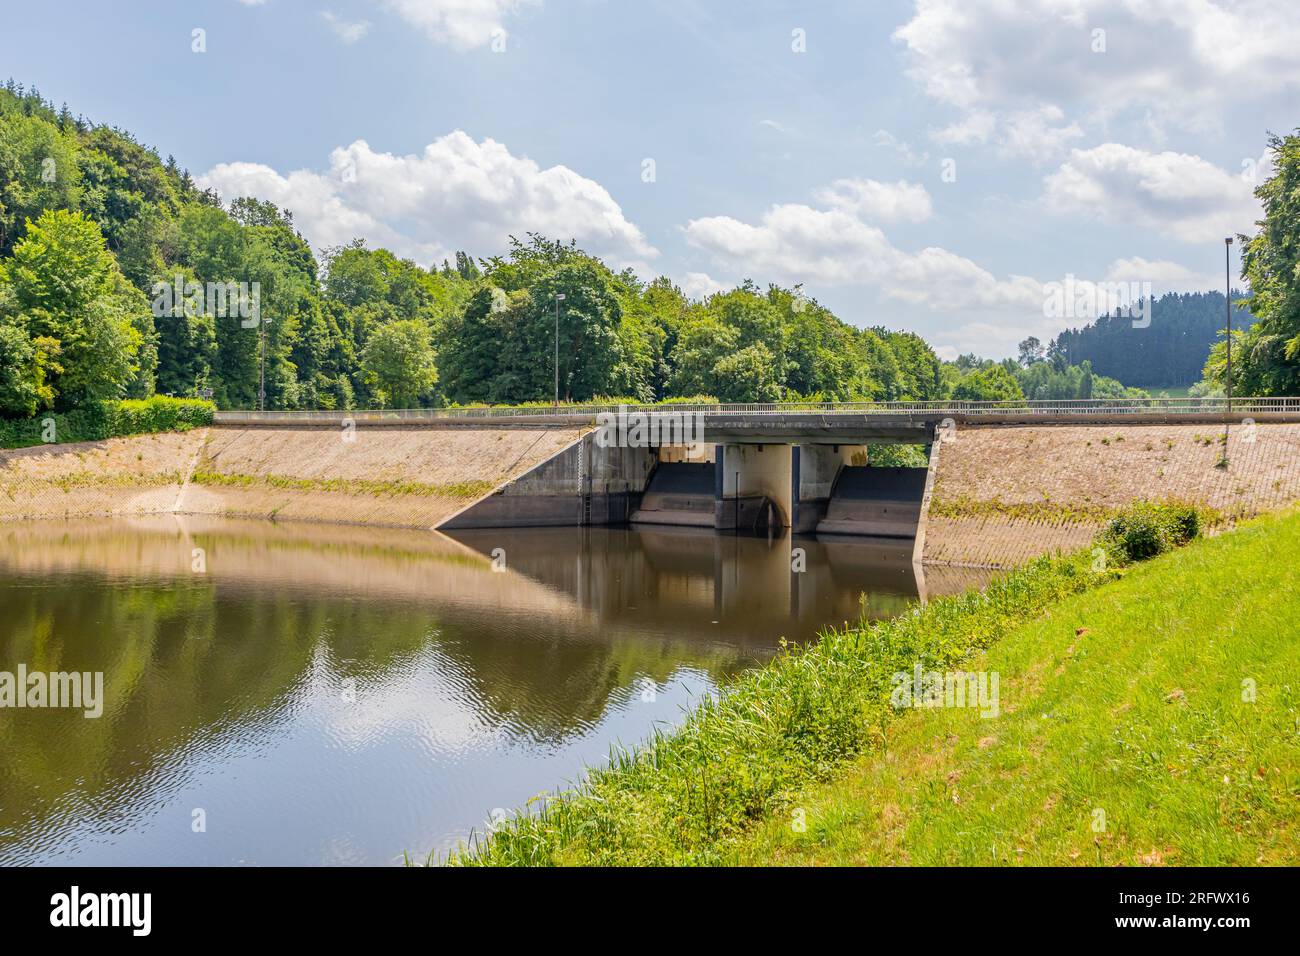 Diga di Staumauer Bitburger sul fiume Prum, riflesso sulla superficie dell'acqua, ponte veicolare, alberi frondosi verdi sullo sfondo, serbatoio di Stausee Bitburg su un Foto Stock